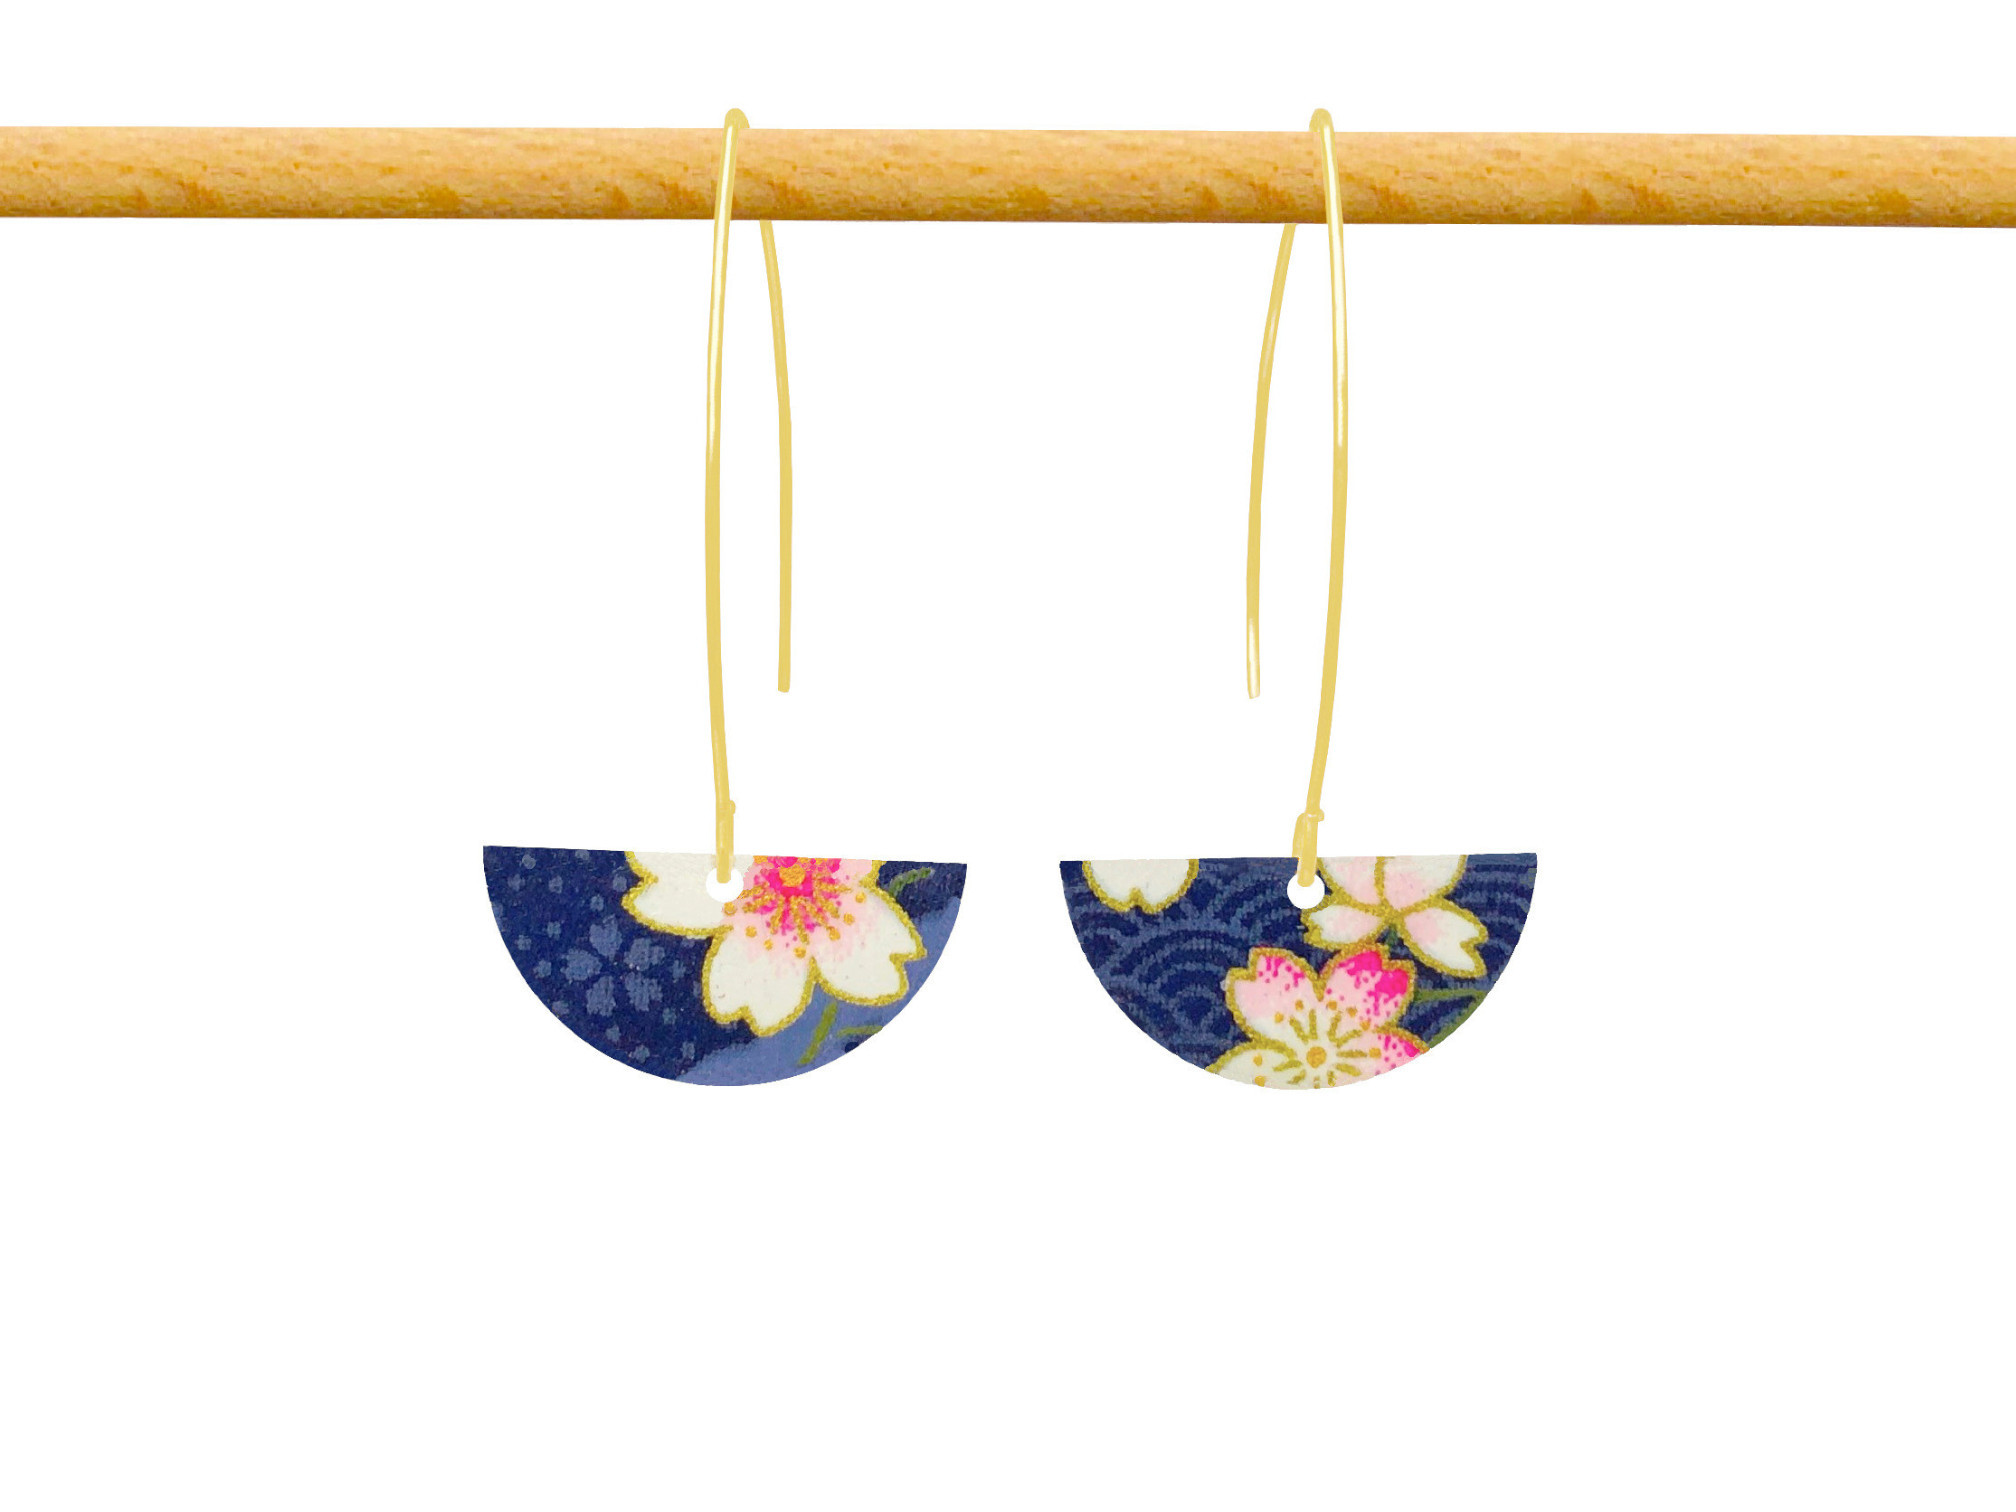 Boucles d'oreilles AKARI acier inoxydable doré or pendantes pendentif papier japonais washi fleurs couleur bleu et rose - MARJANE et Cie